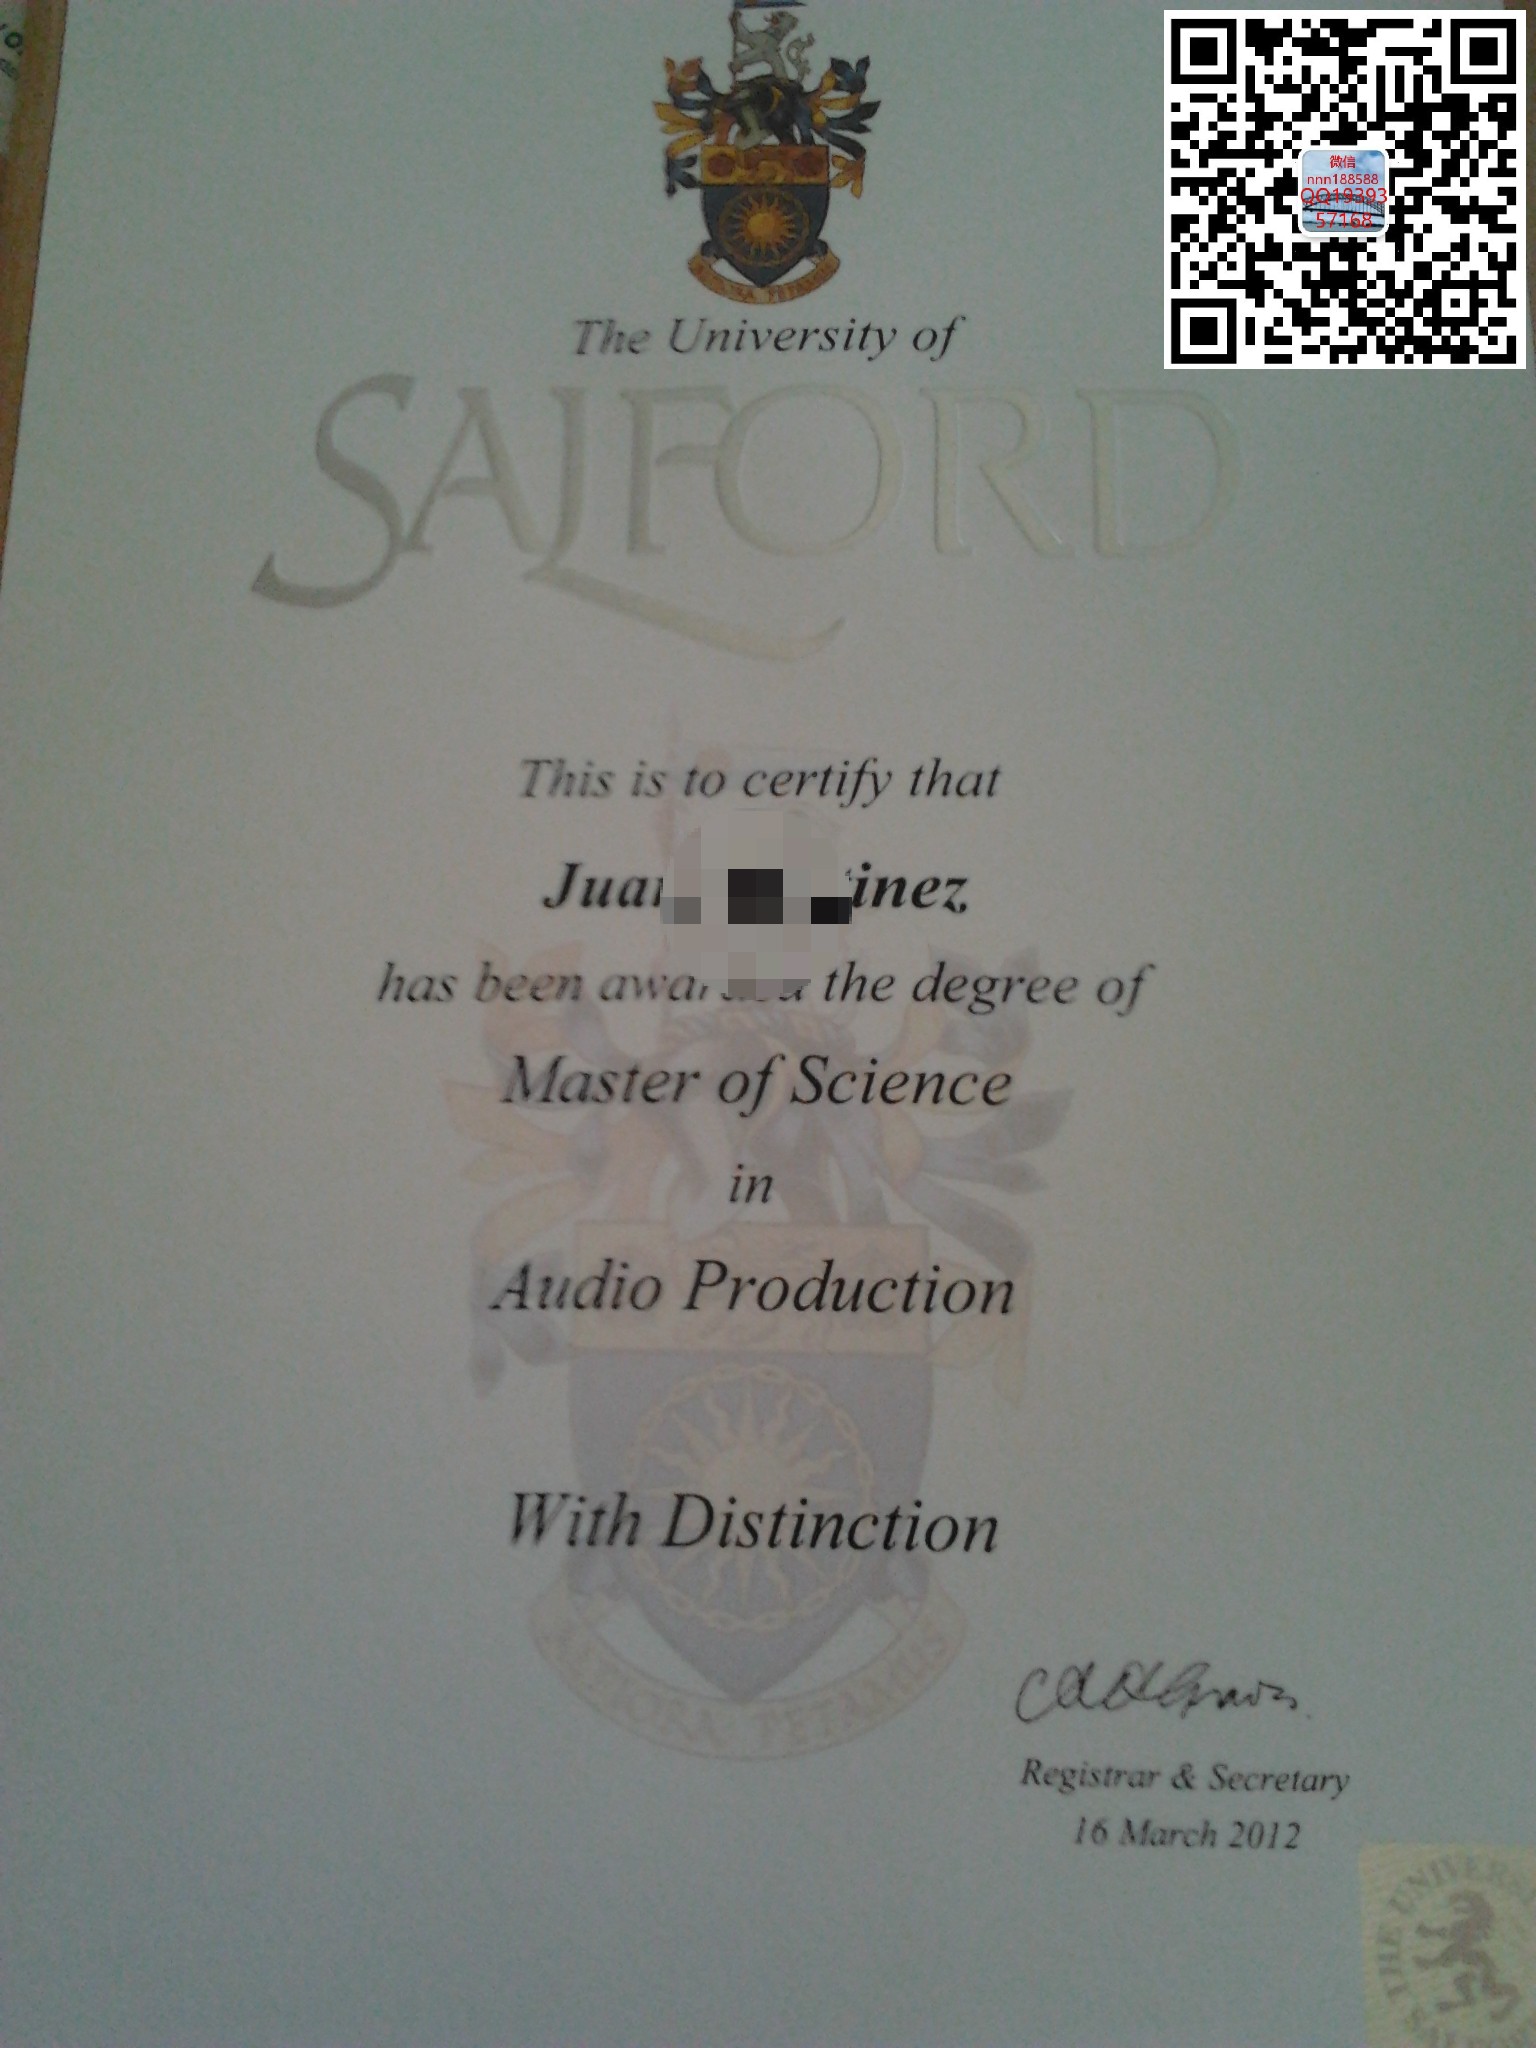 英国索尔福德大学文凭样式 University of Salford Diploma